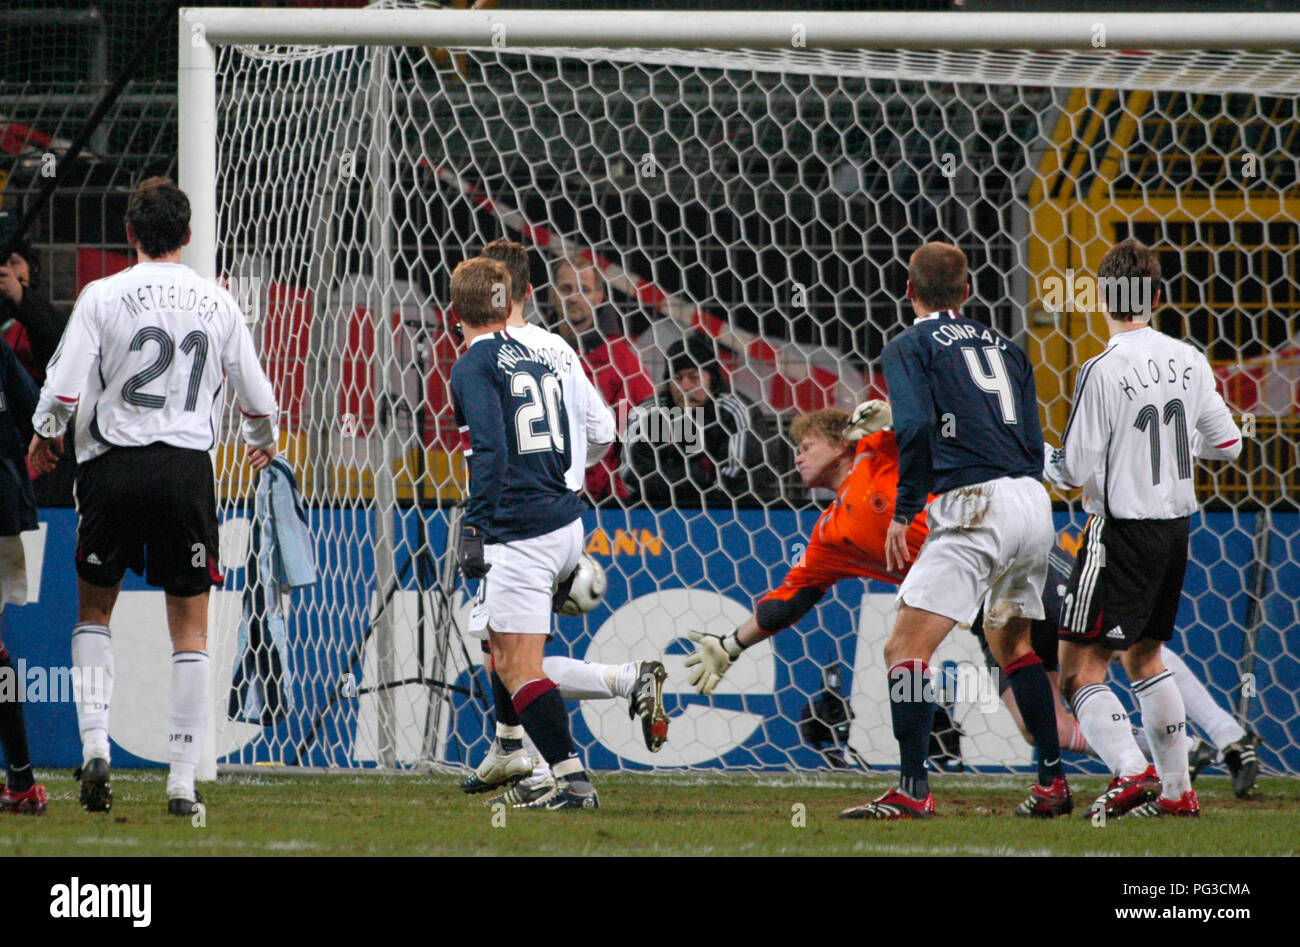 Westfalenstadion Dortmund Allemagne 22.3.2006, football match amical Allemagne vs USA 4:1 - Oliver Kahn sauve un tir au but Banque D'Images